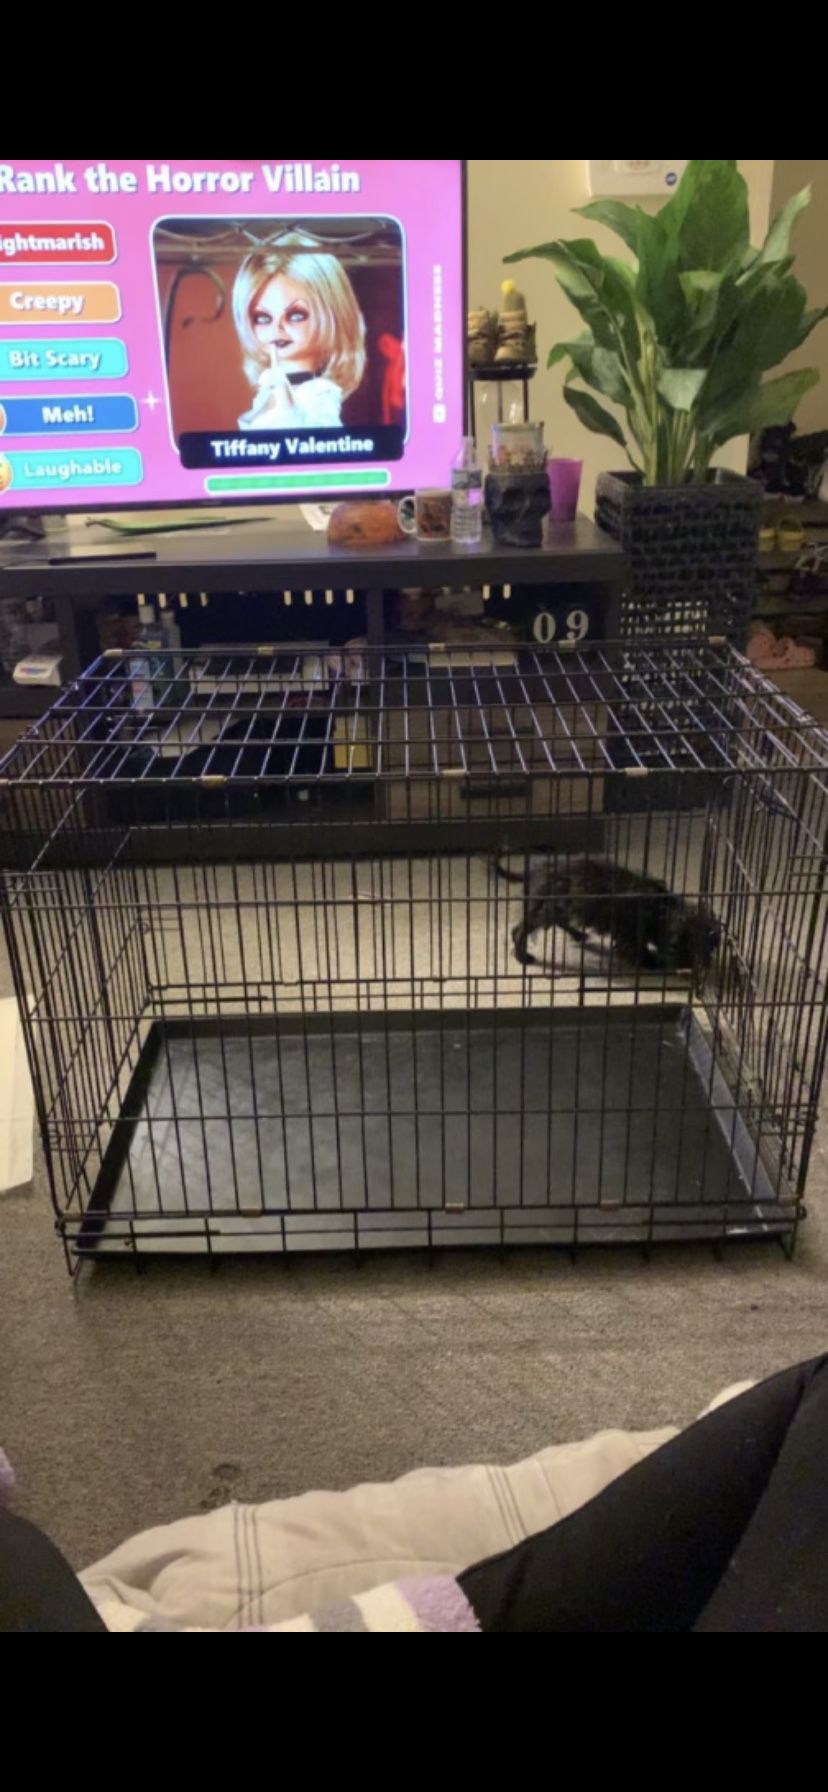 Black Medium Dog Crate